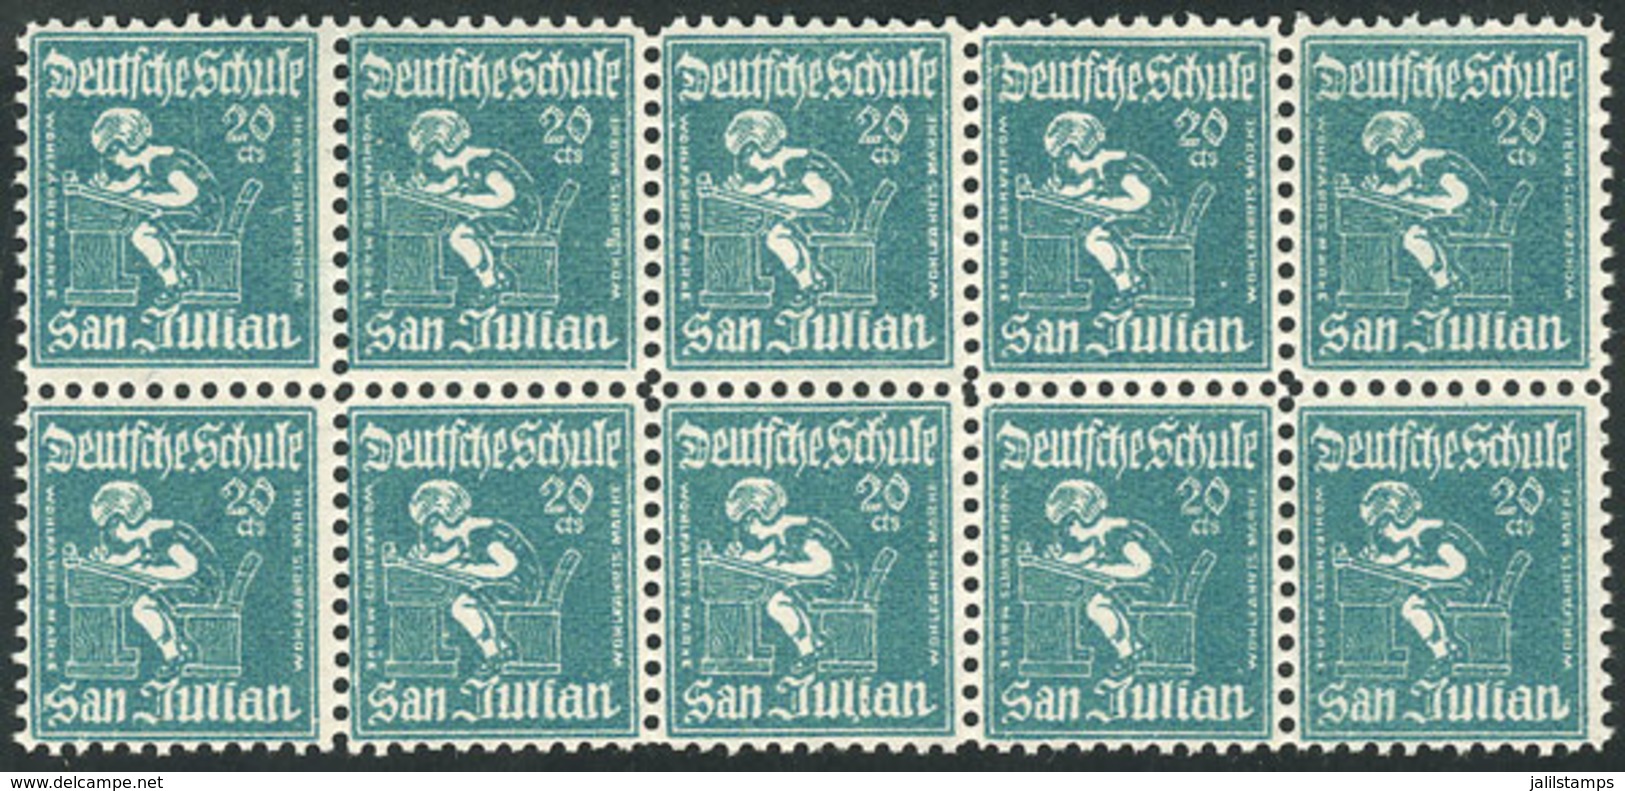 ARGENTINA: Circa 1920: Deutsche Schule Of SAN JULIÁN, Wohlfahrts Marke, Block Of 10 Cinderellas Of 20c., Rare! - Cinderellas